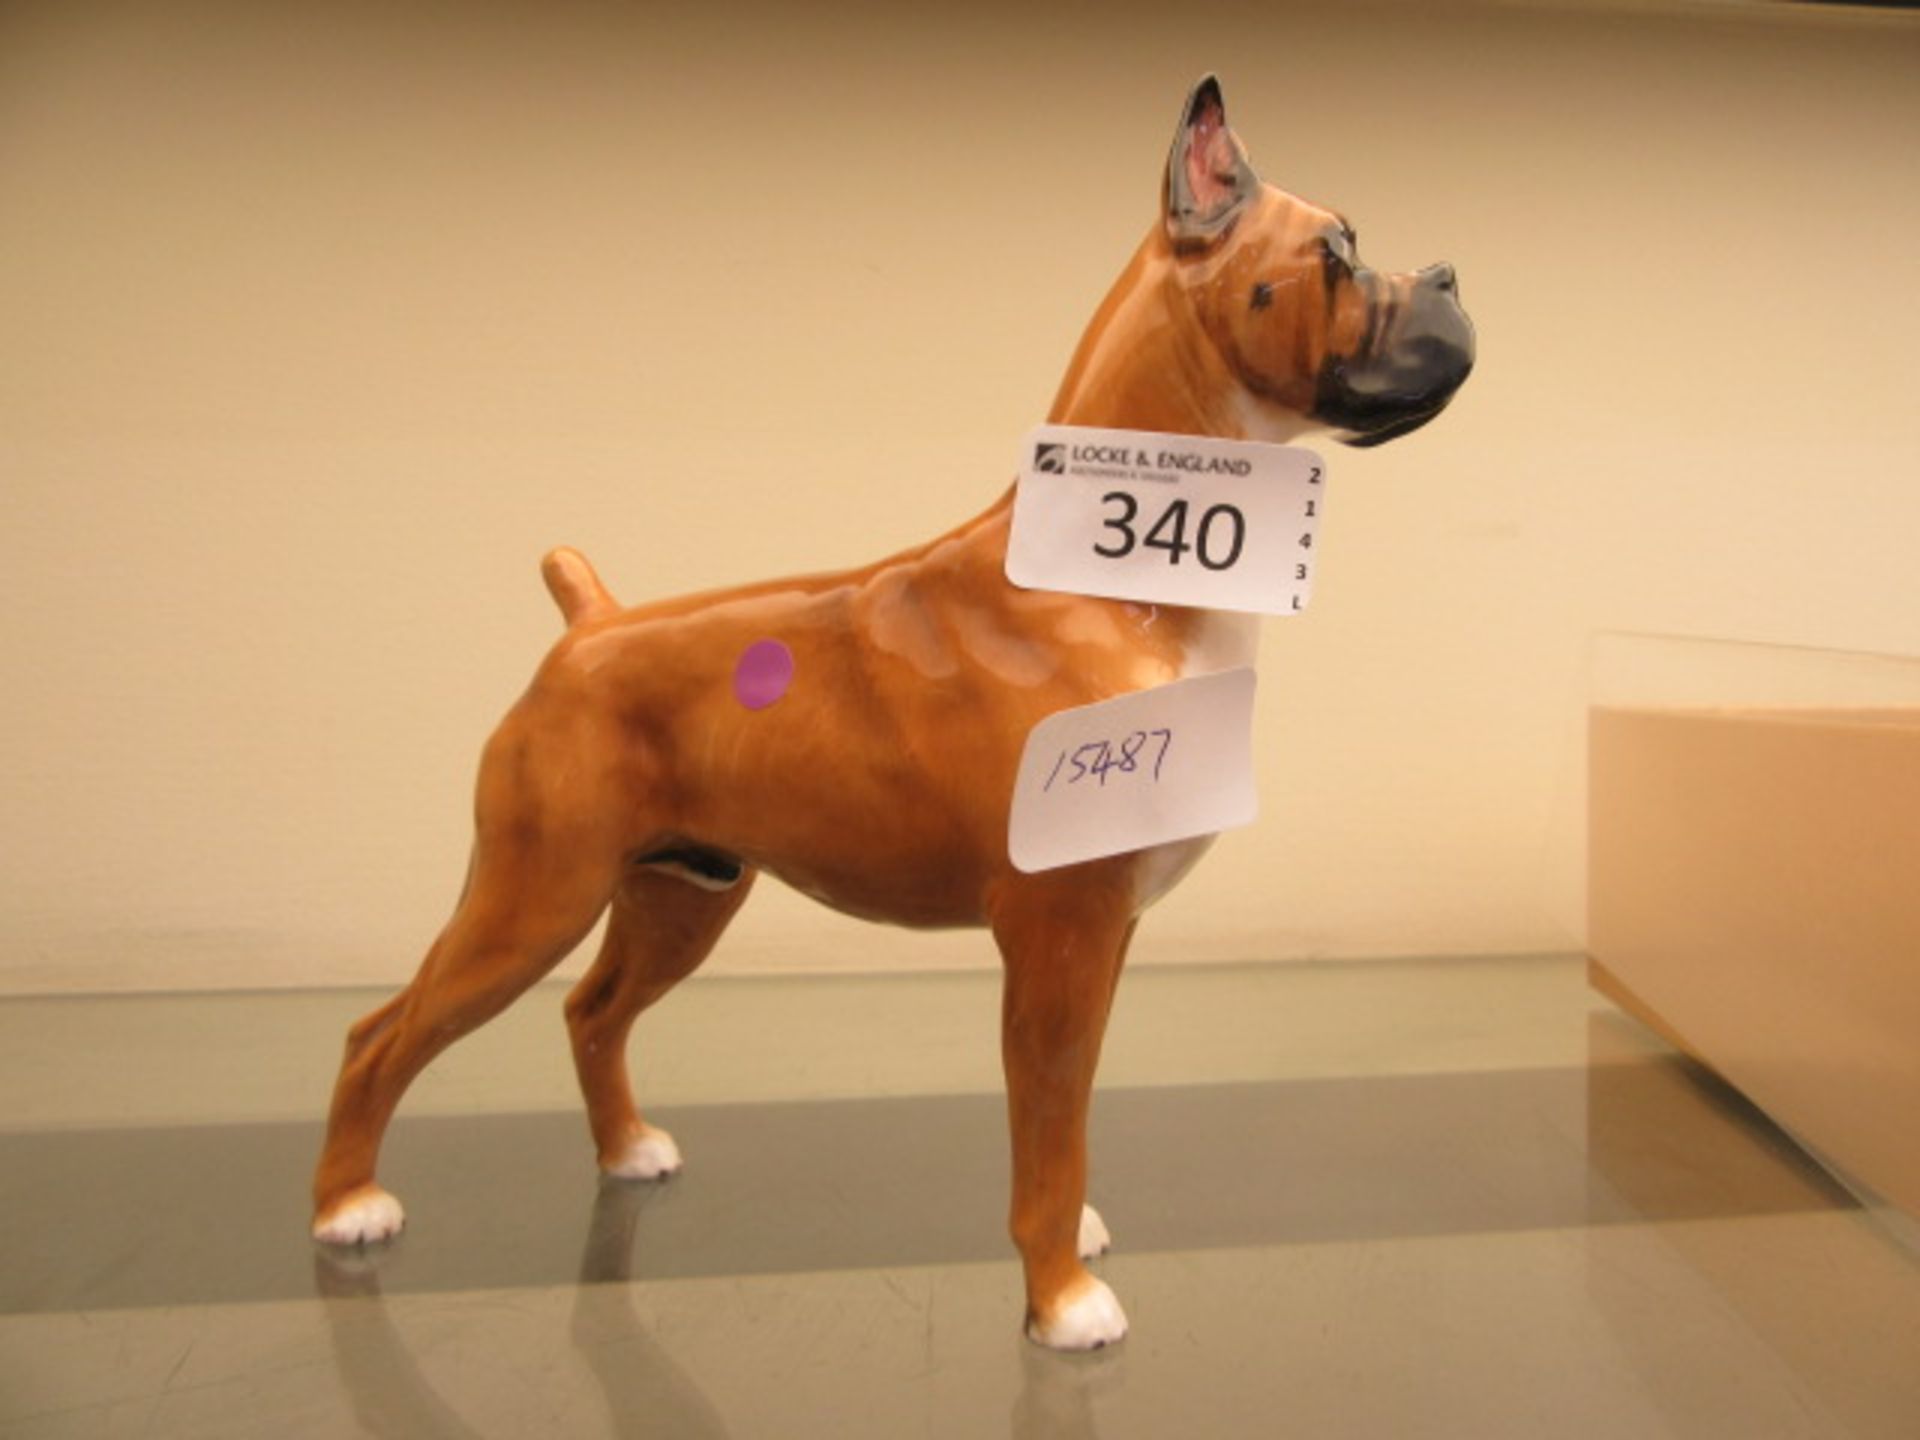 A Royal Doulton model of bulldog